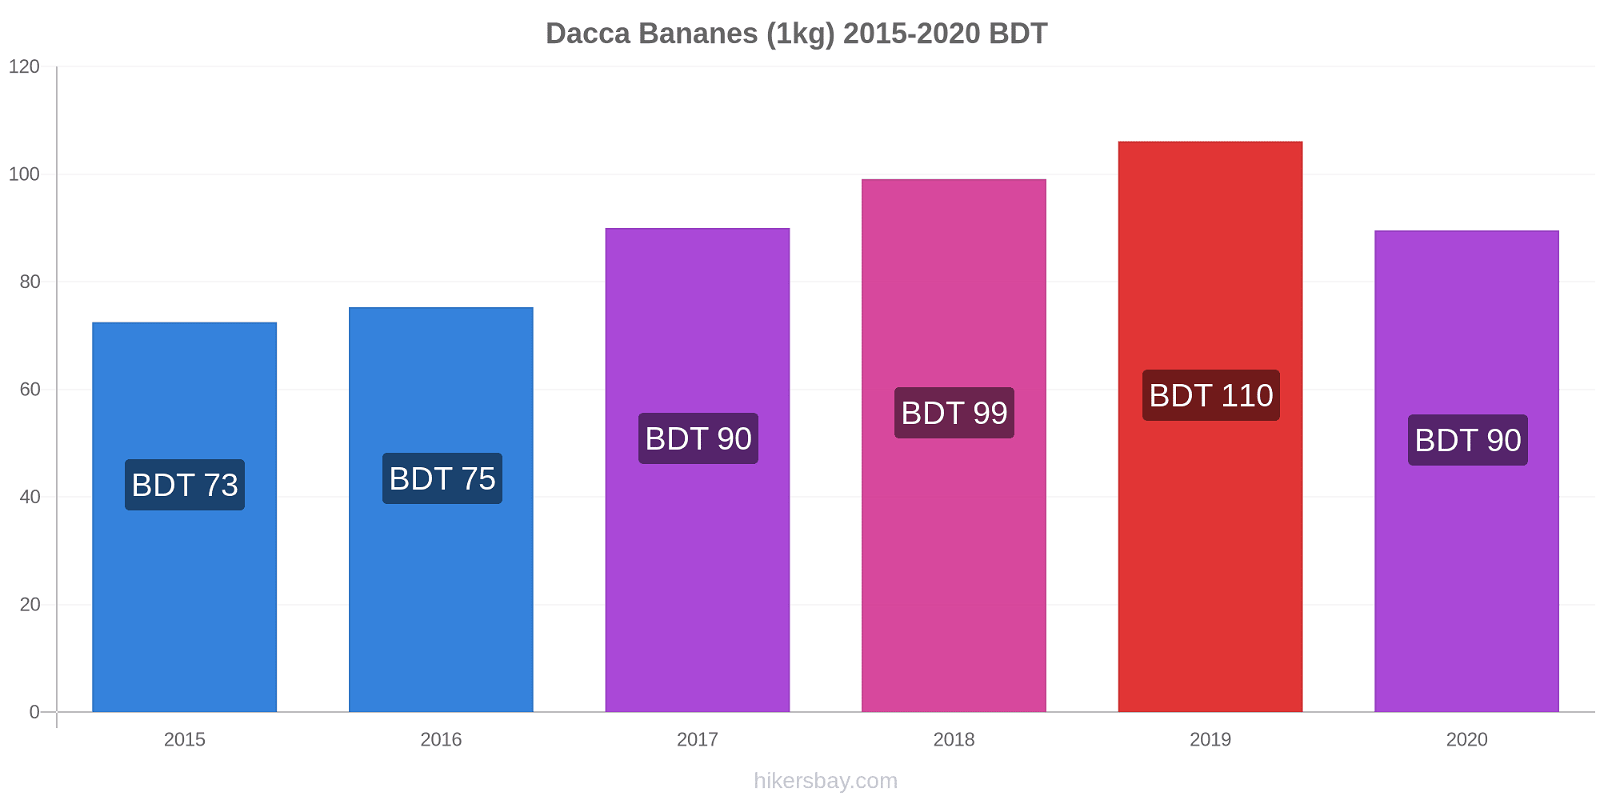 Dacca changements de prix Bananes (1kg) hikersbay.com